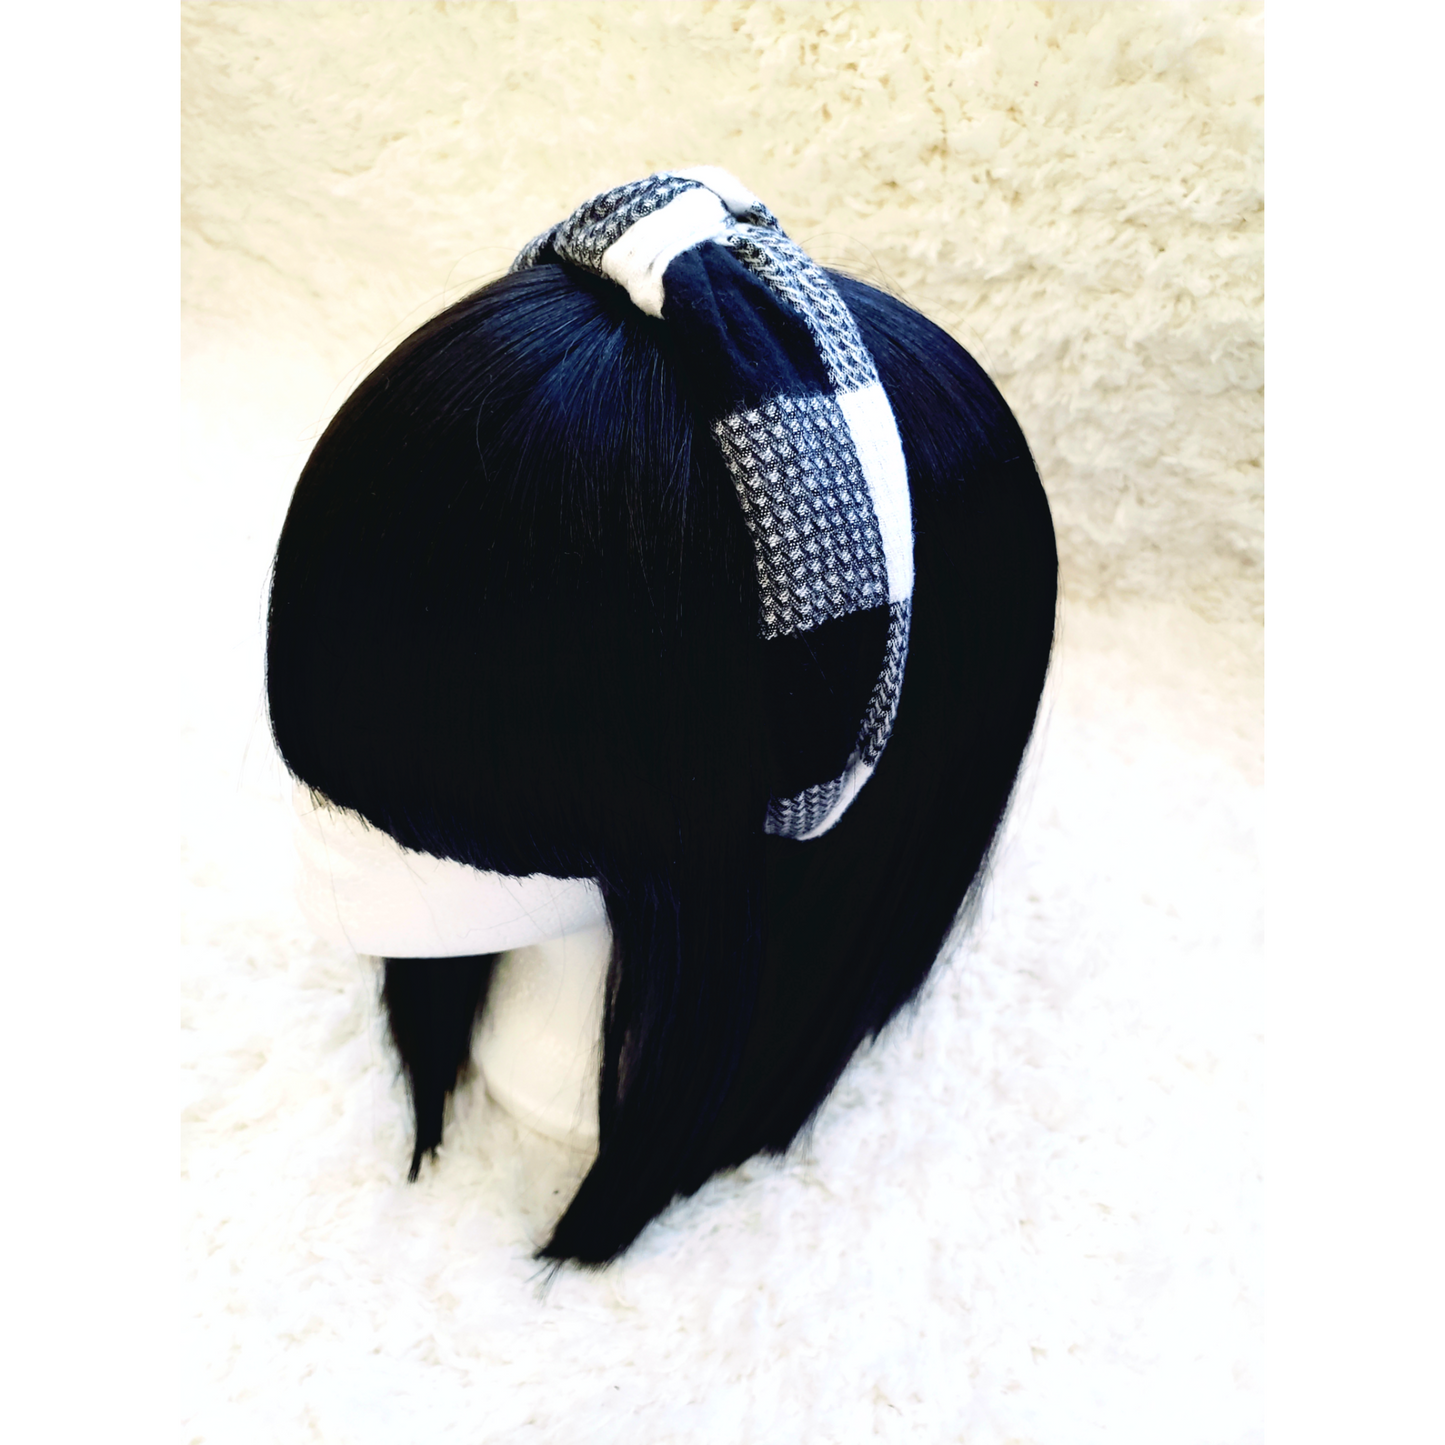 Plaid Headband - Black & White